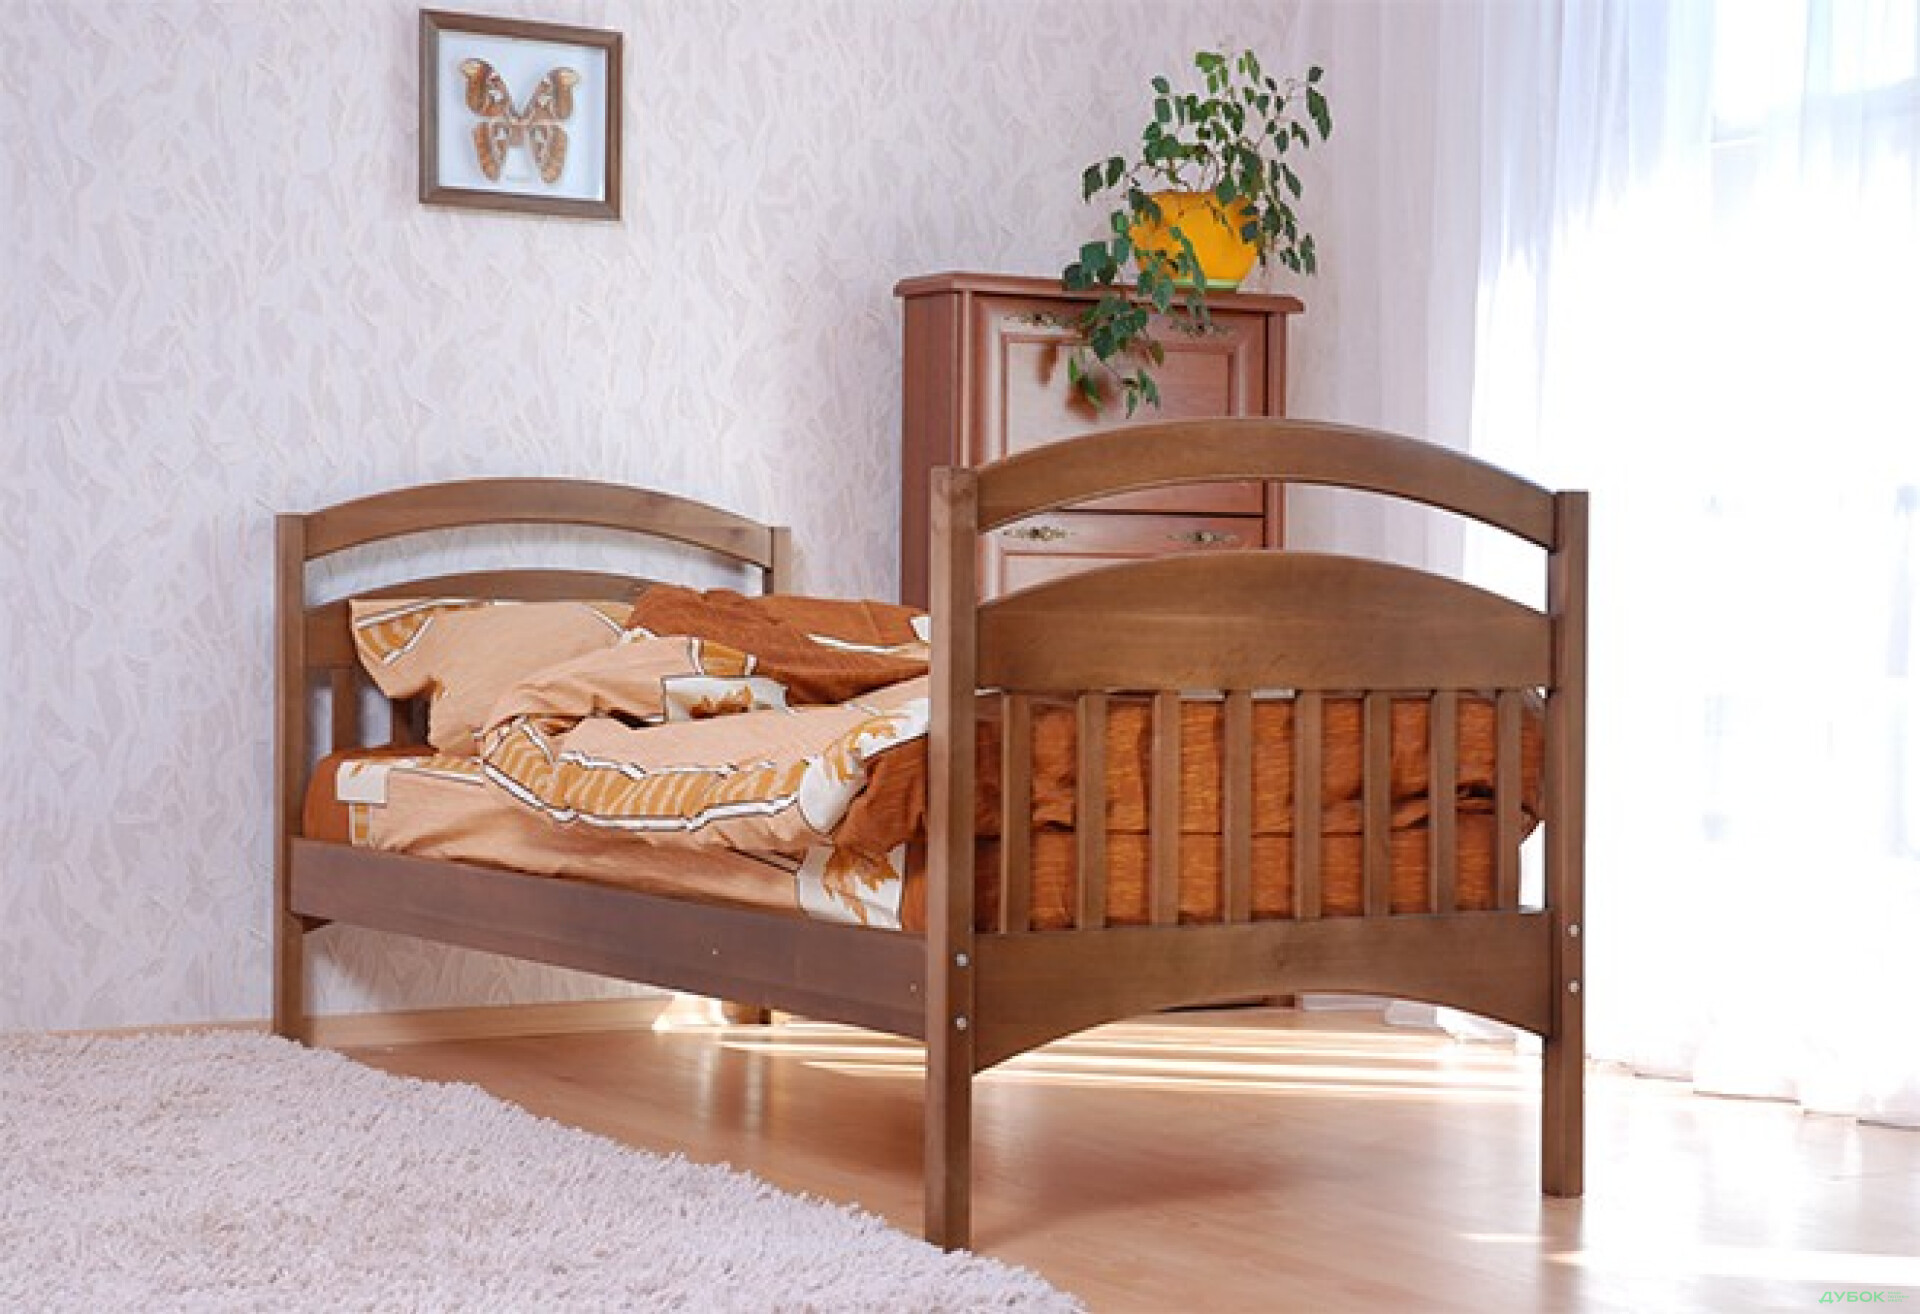 Фото 2 - Кровать одноярусная (нижняя) Кровать Арина Венгер